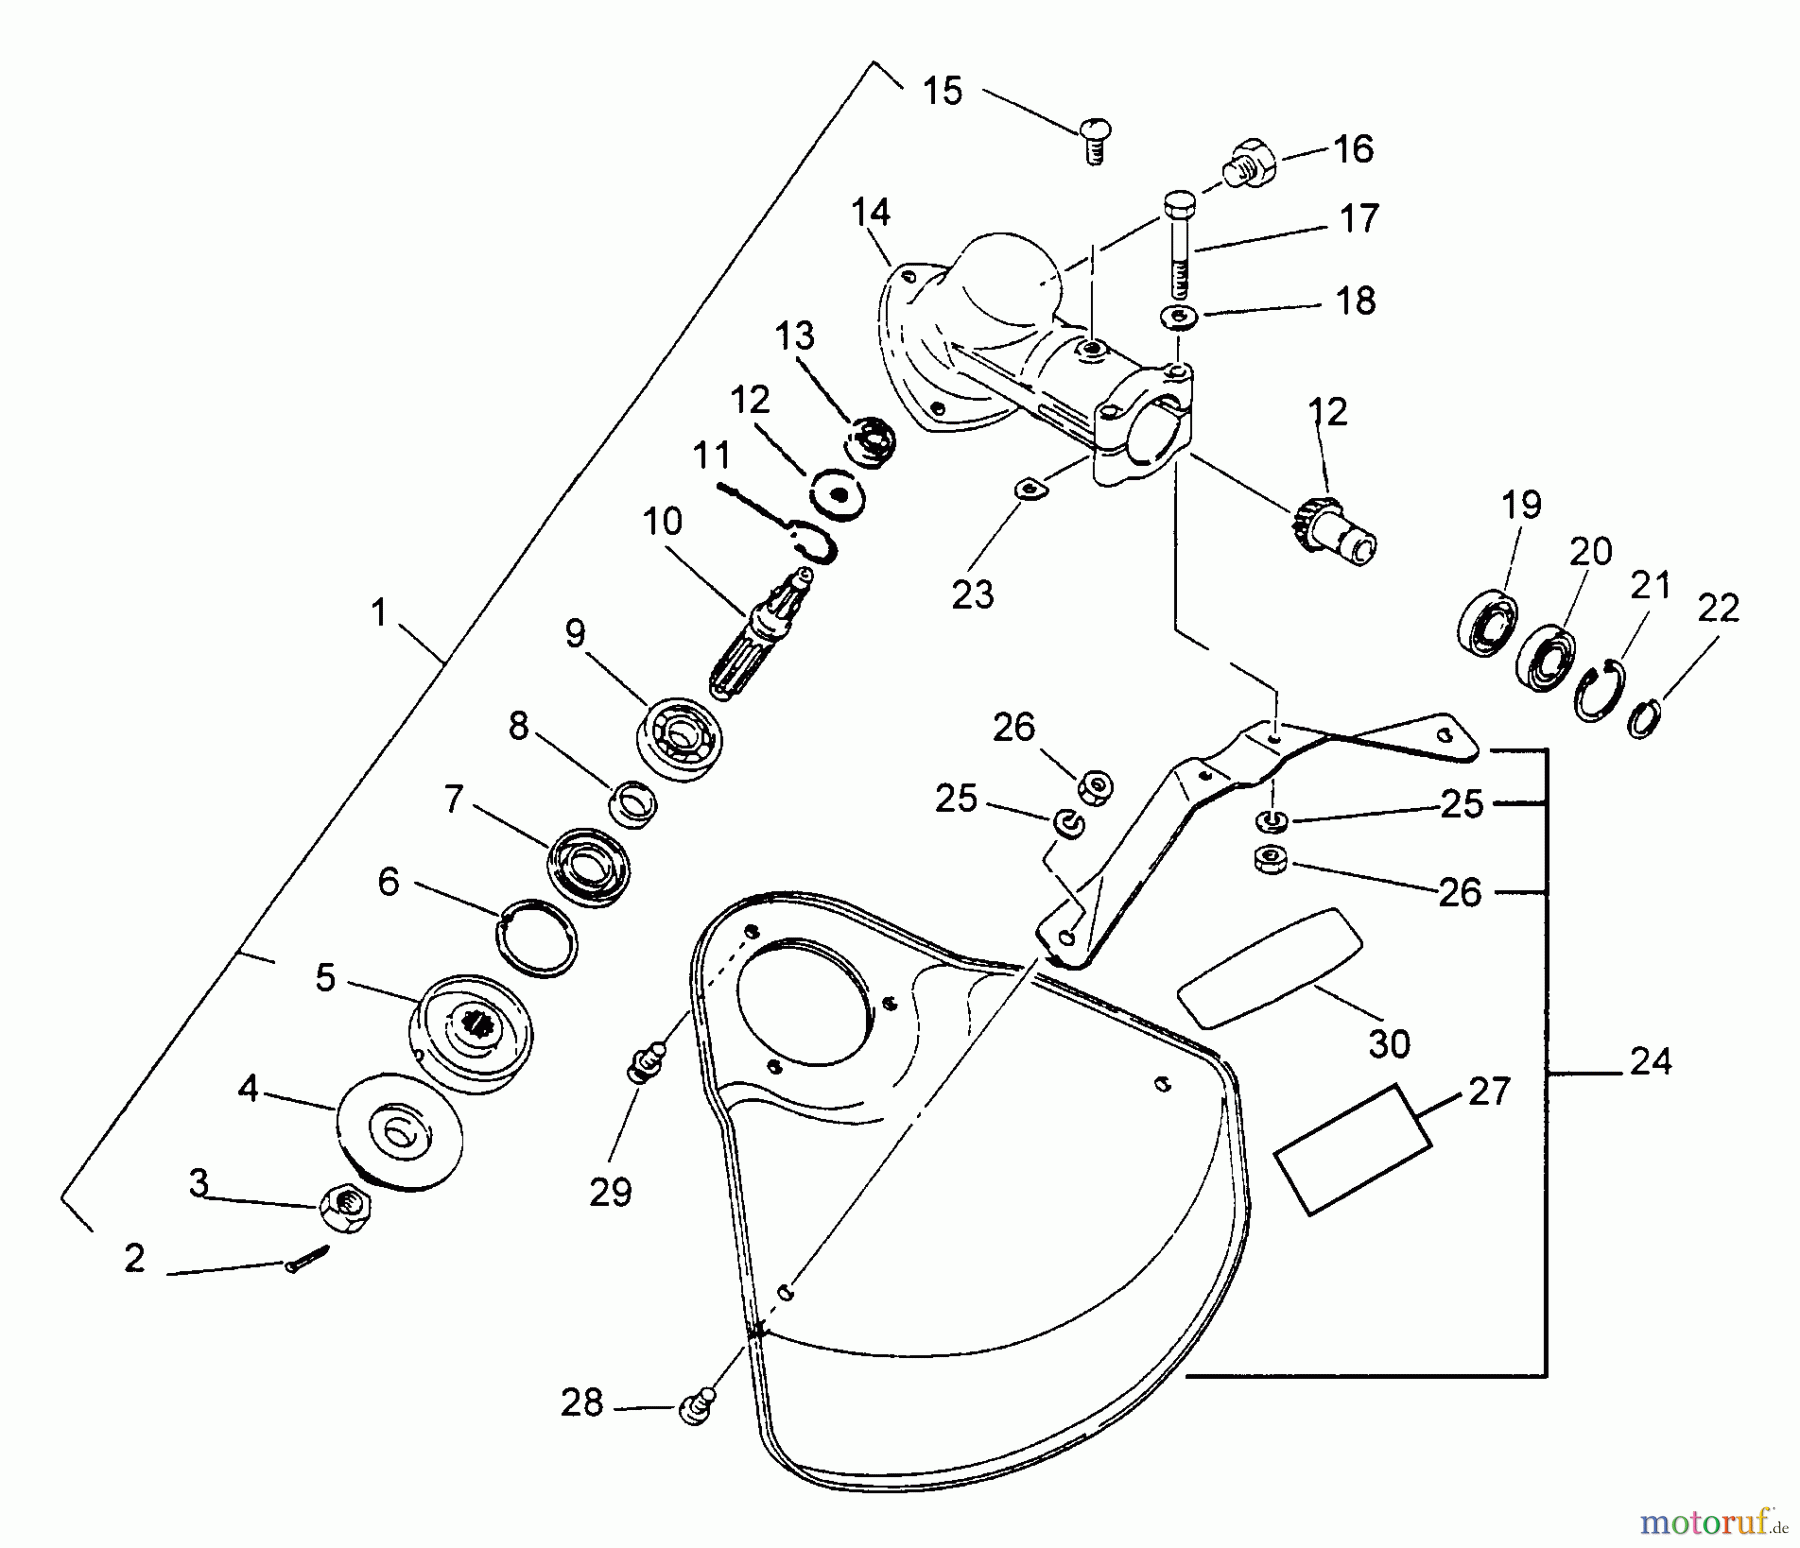  Echo Trimmer, Faden / Bürste SRM-3110 - Echo String Trimmer (Type 2E) Gear Case, Shield